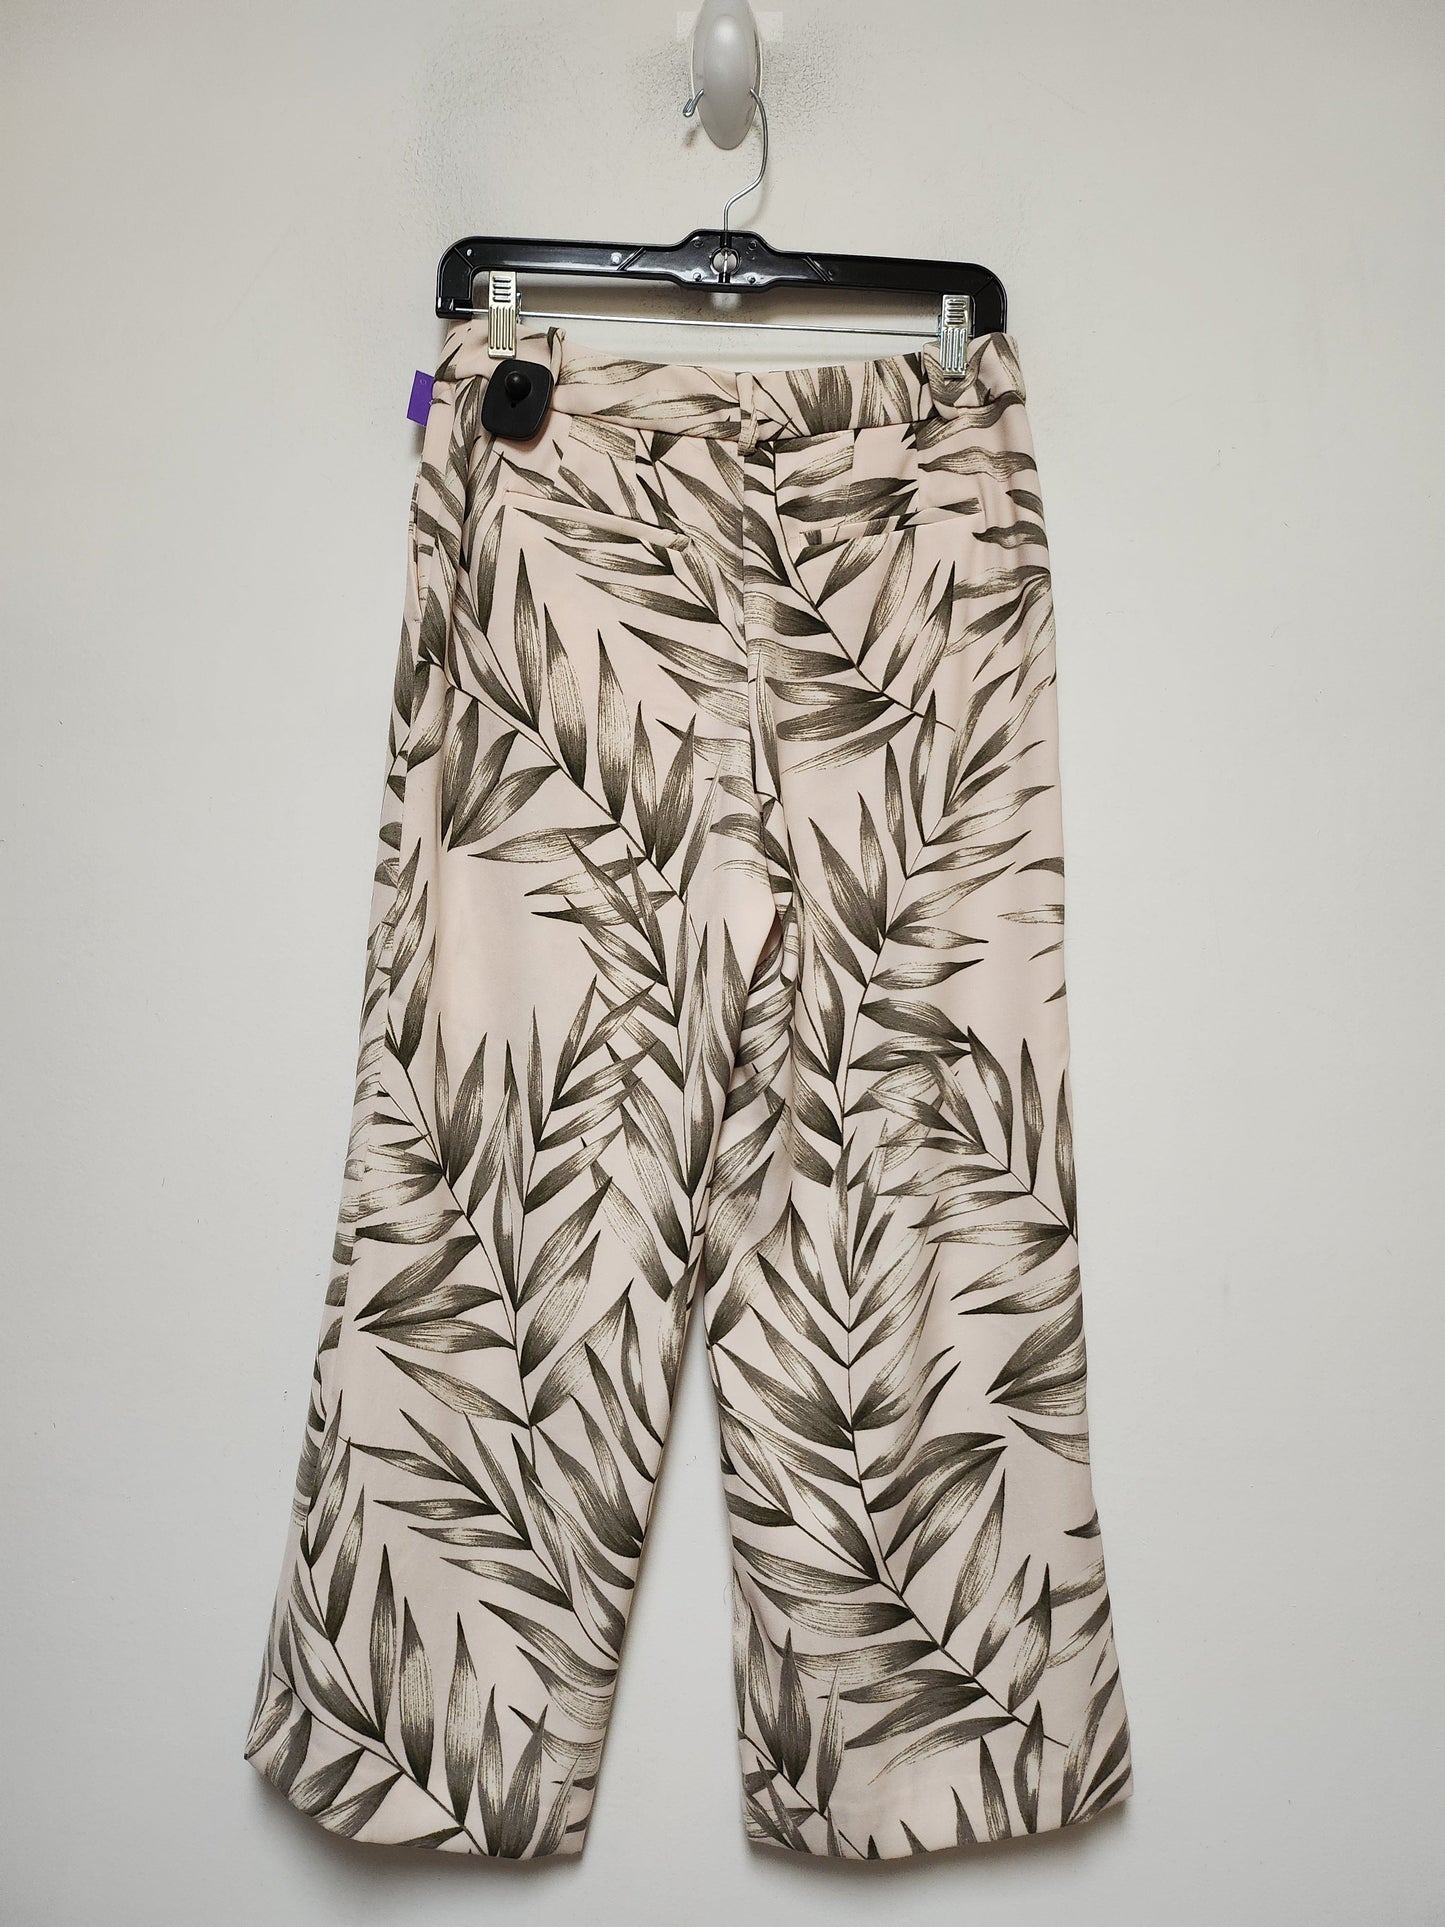 Tropical Print Pants Wide Leg Ann Taylor, Size 0